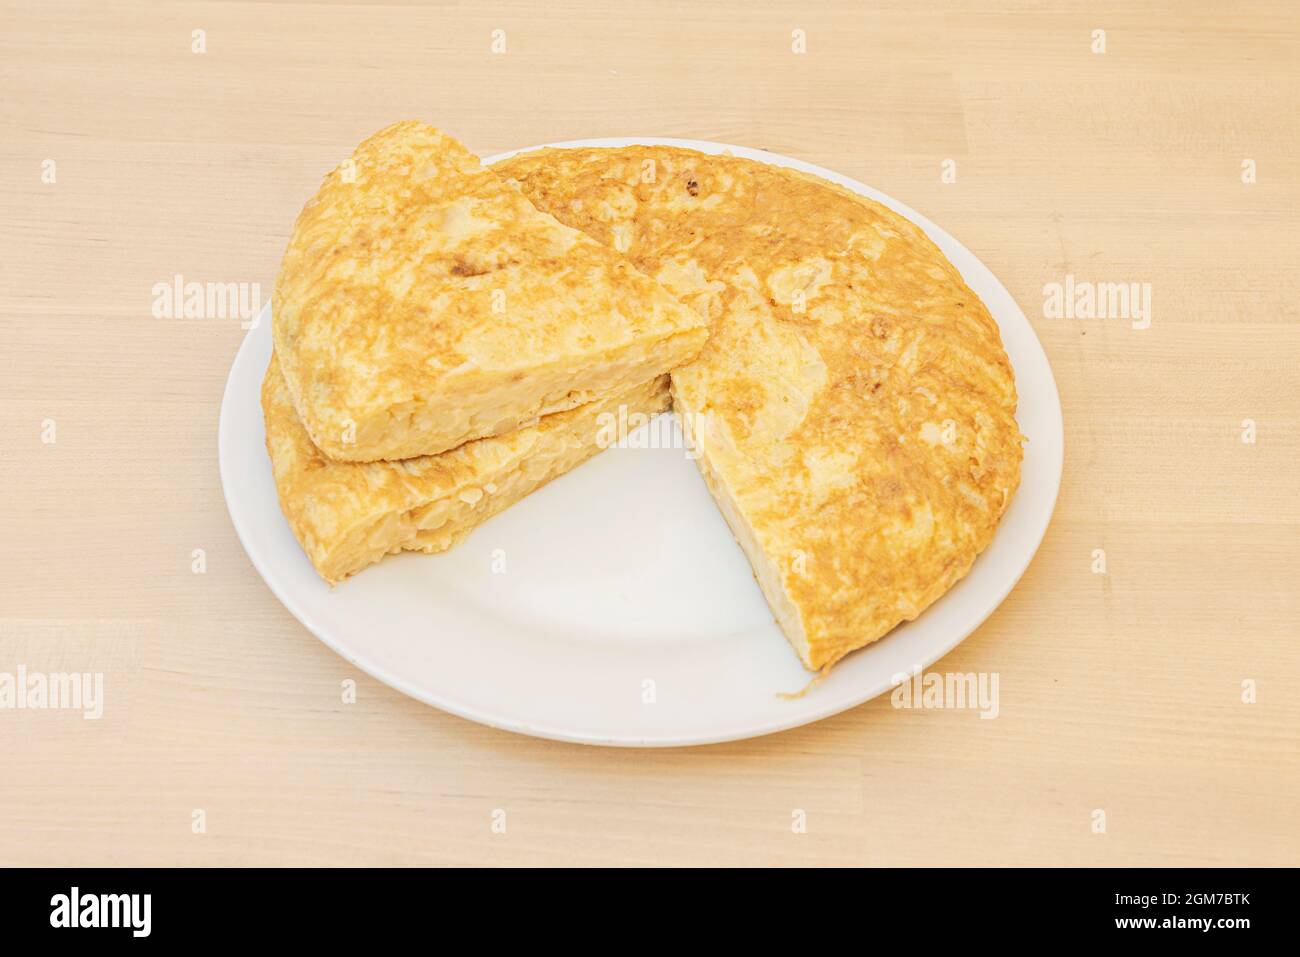 Spanisches Omelett mit Kartoffeln und Eiern mit einer separaten Portion und darauf gelegt, so dass das Innere gut eingestellt ist. Stockfoto